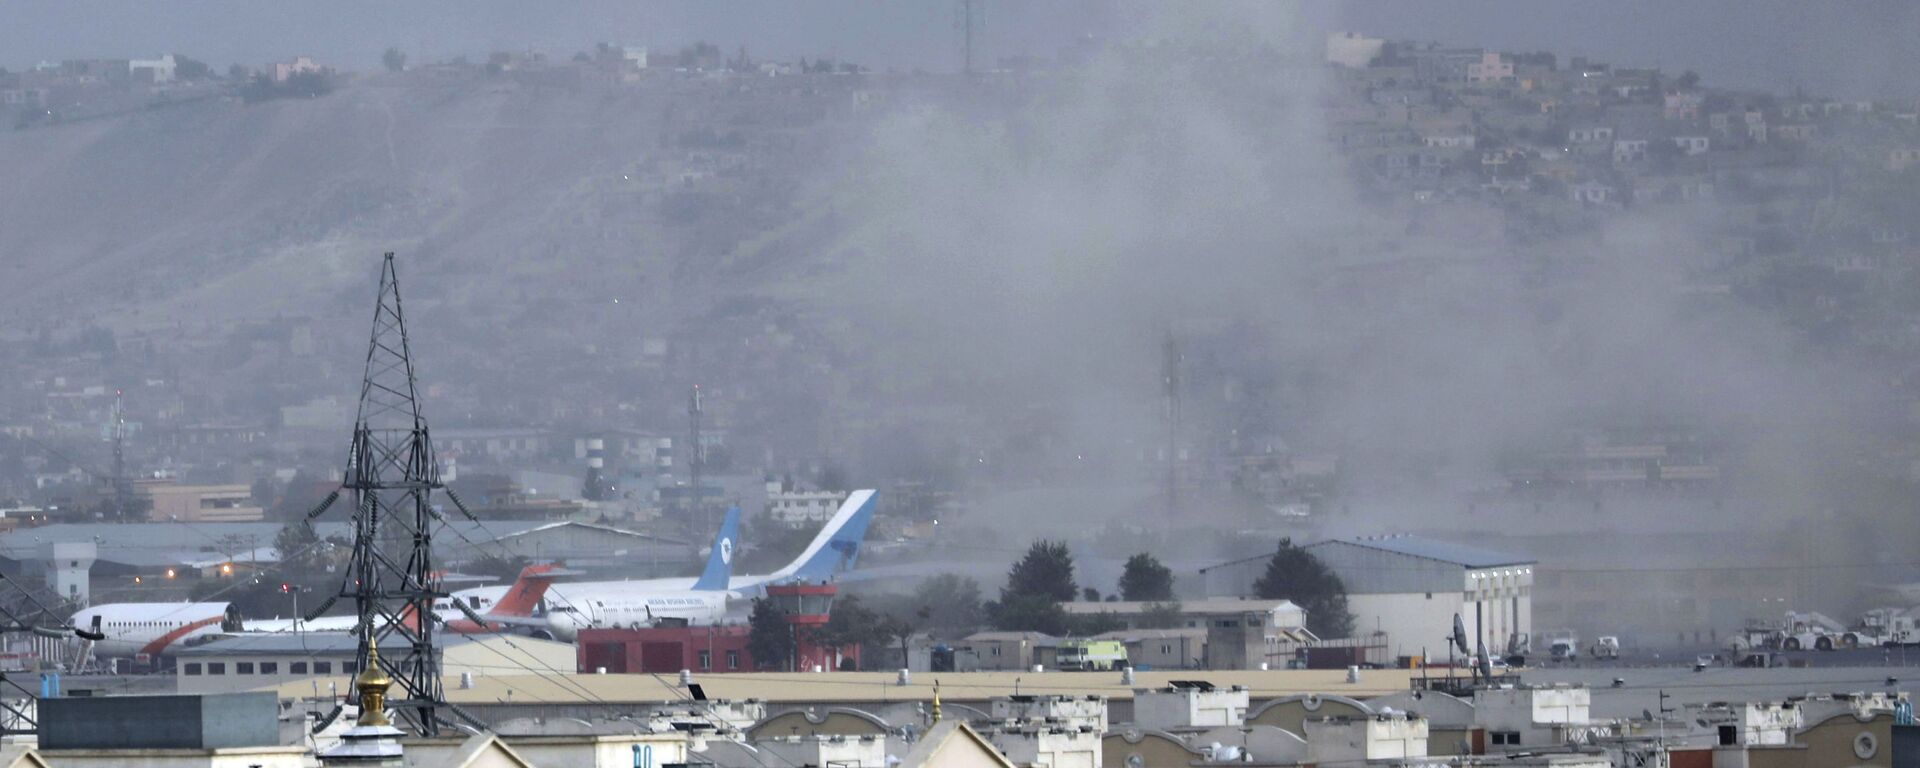 انفجار ارهابي في مطار حامد كرزاي الدولي في كابول، أفغانستان 26 أغسطس 2021 - سبوتنيك عربي, 1920, 13.11.2021